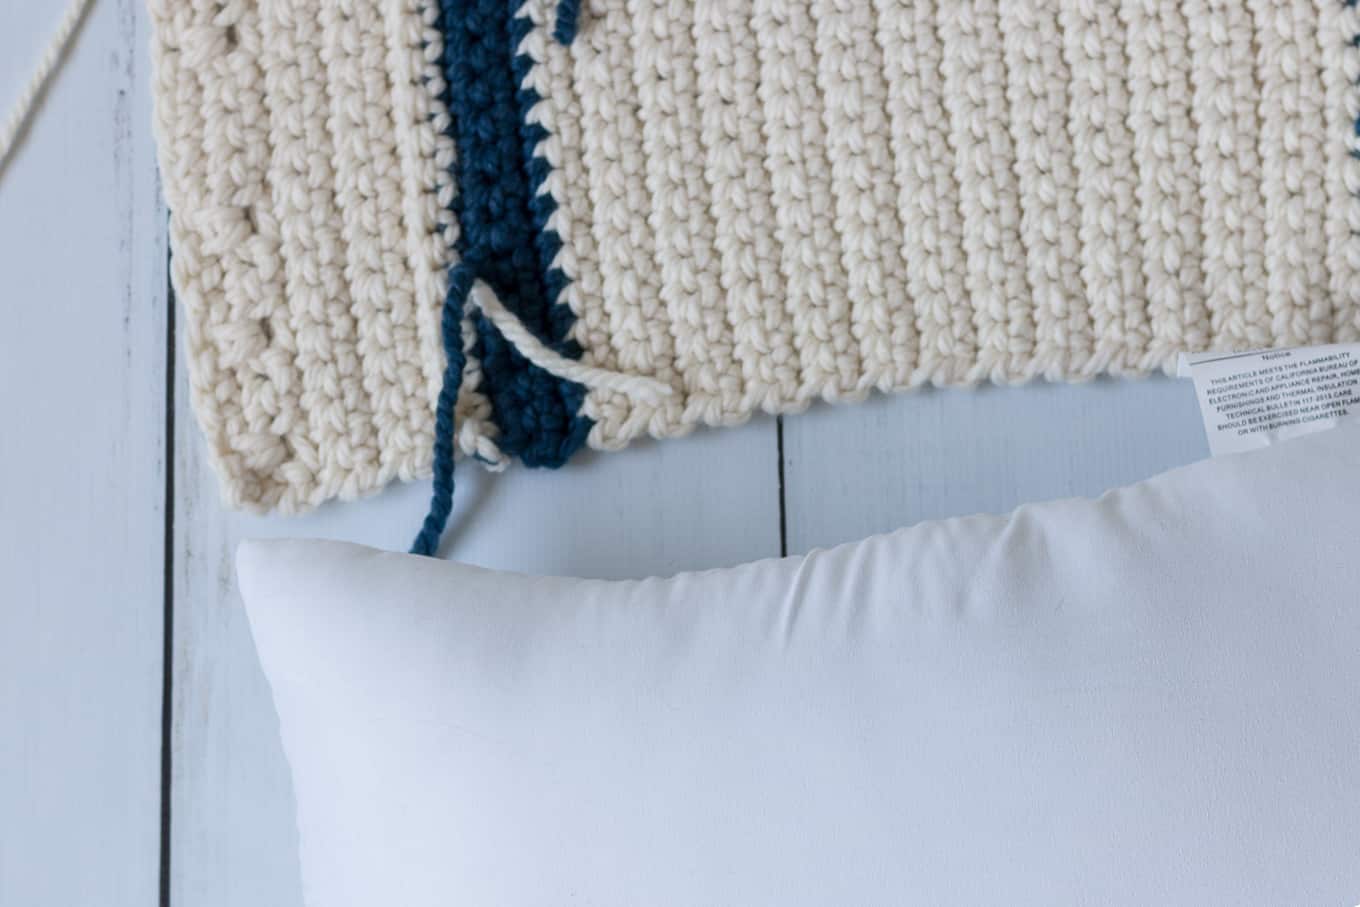 crochet throw pillow